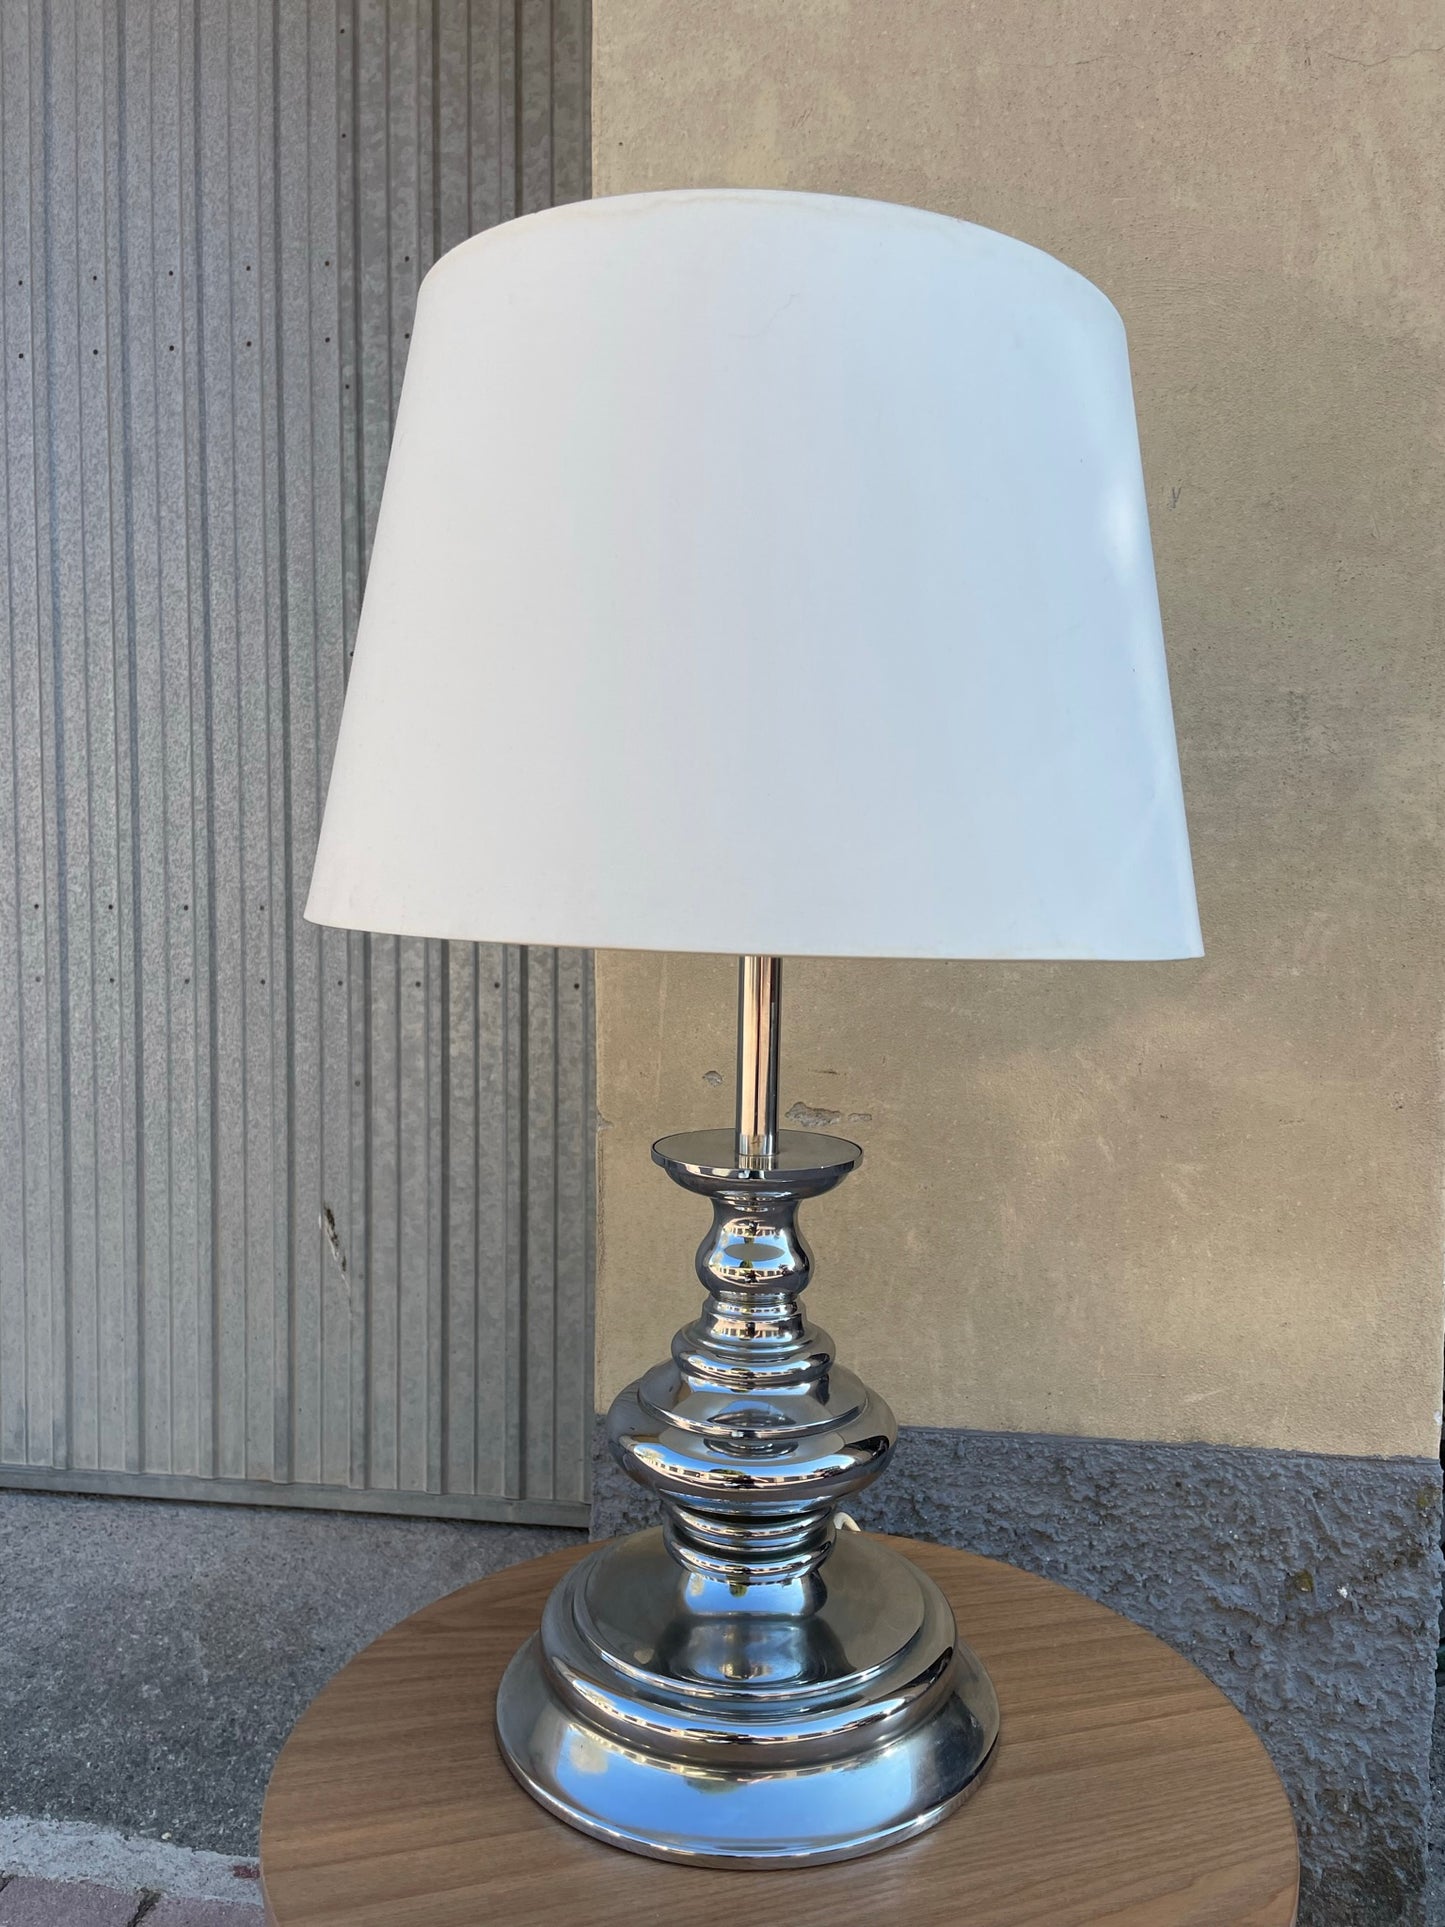 Reggiani Goffredo table lamp